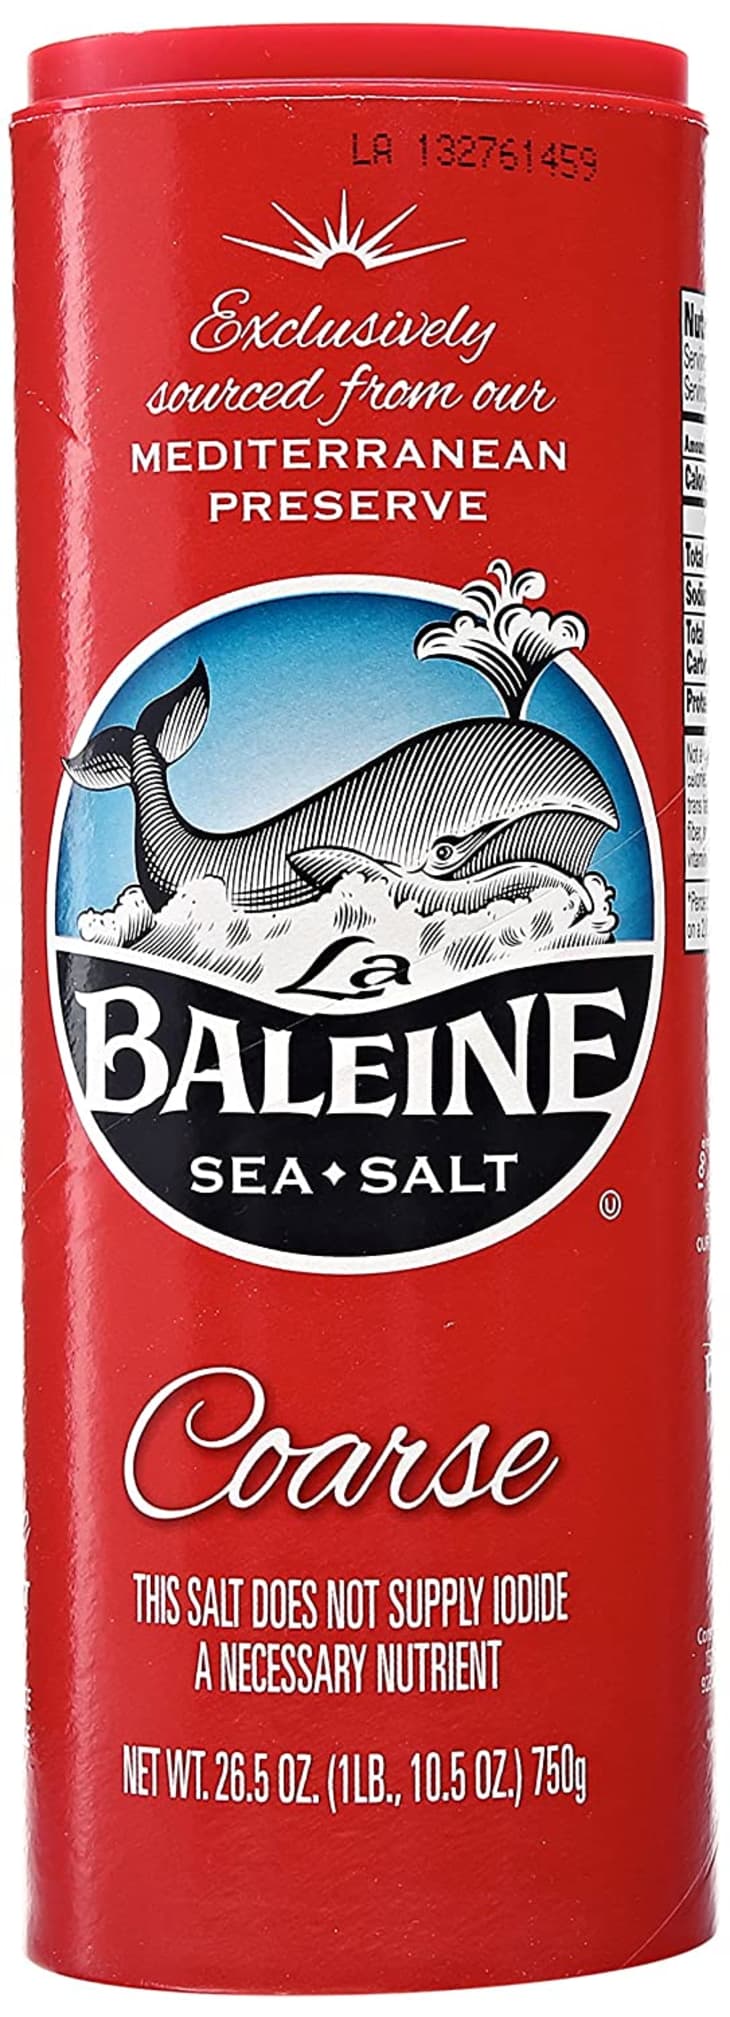 Product Image: La Baleine Coarse Sea Salt